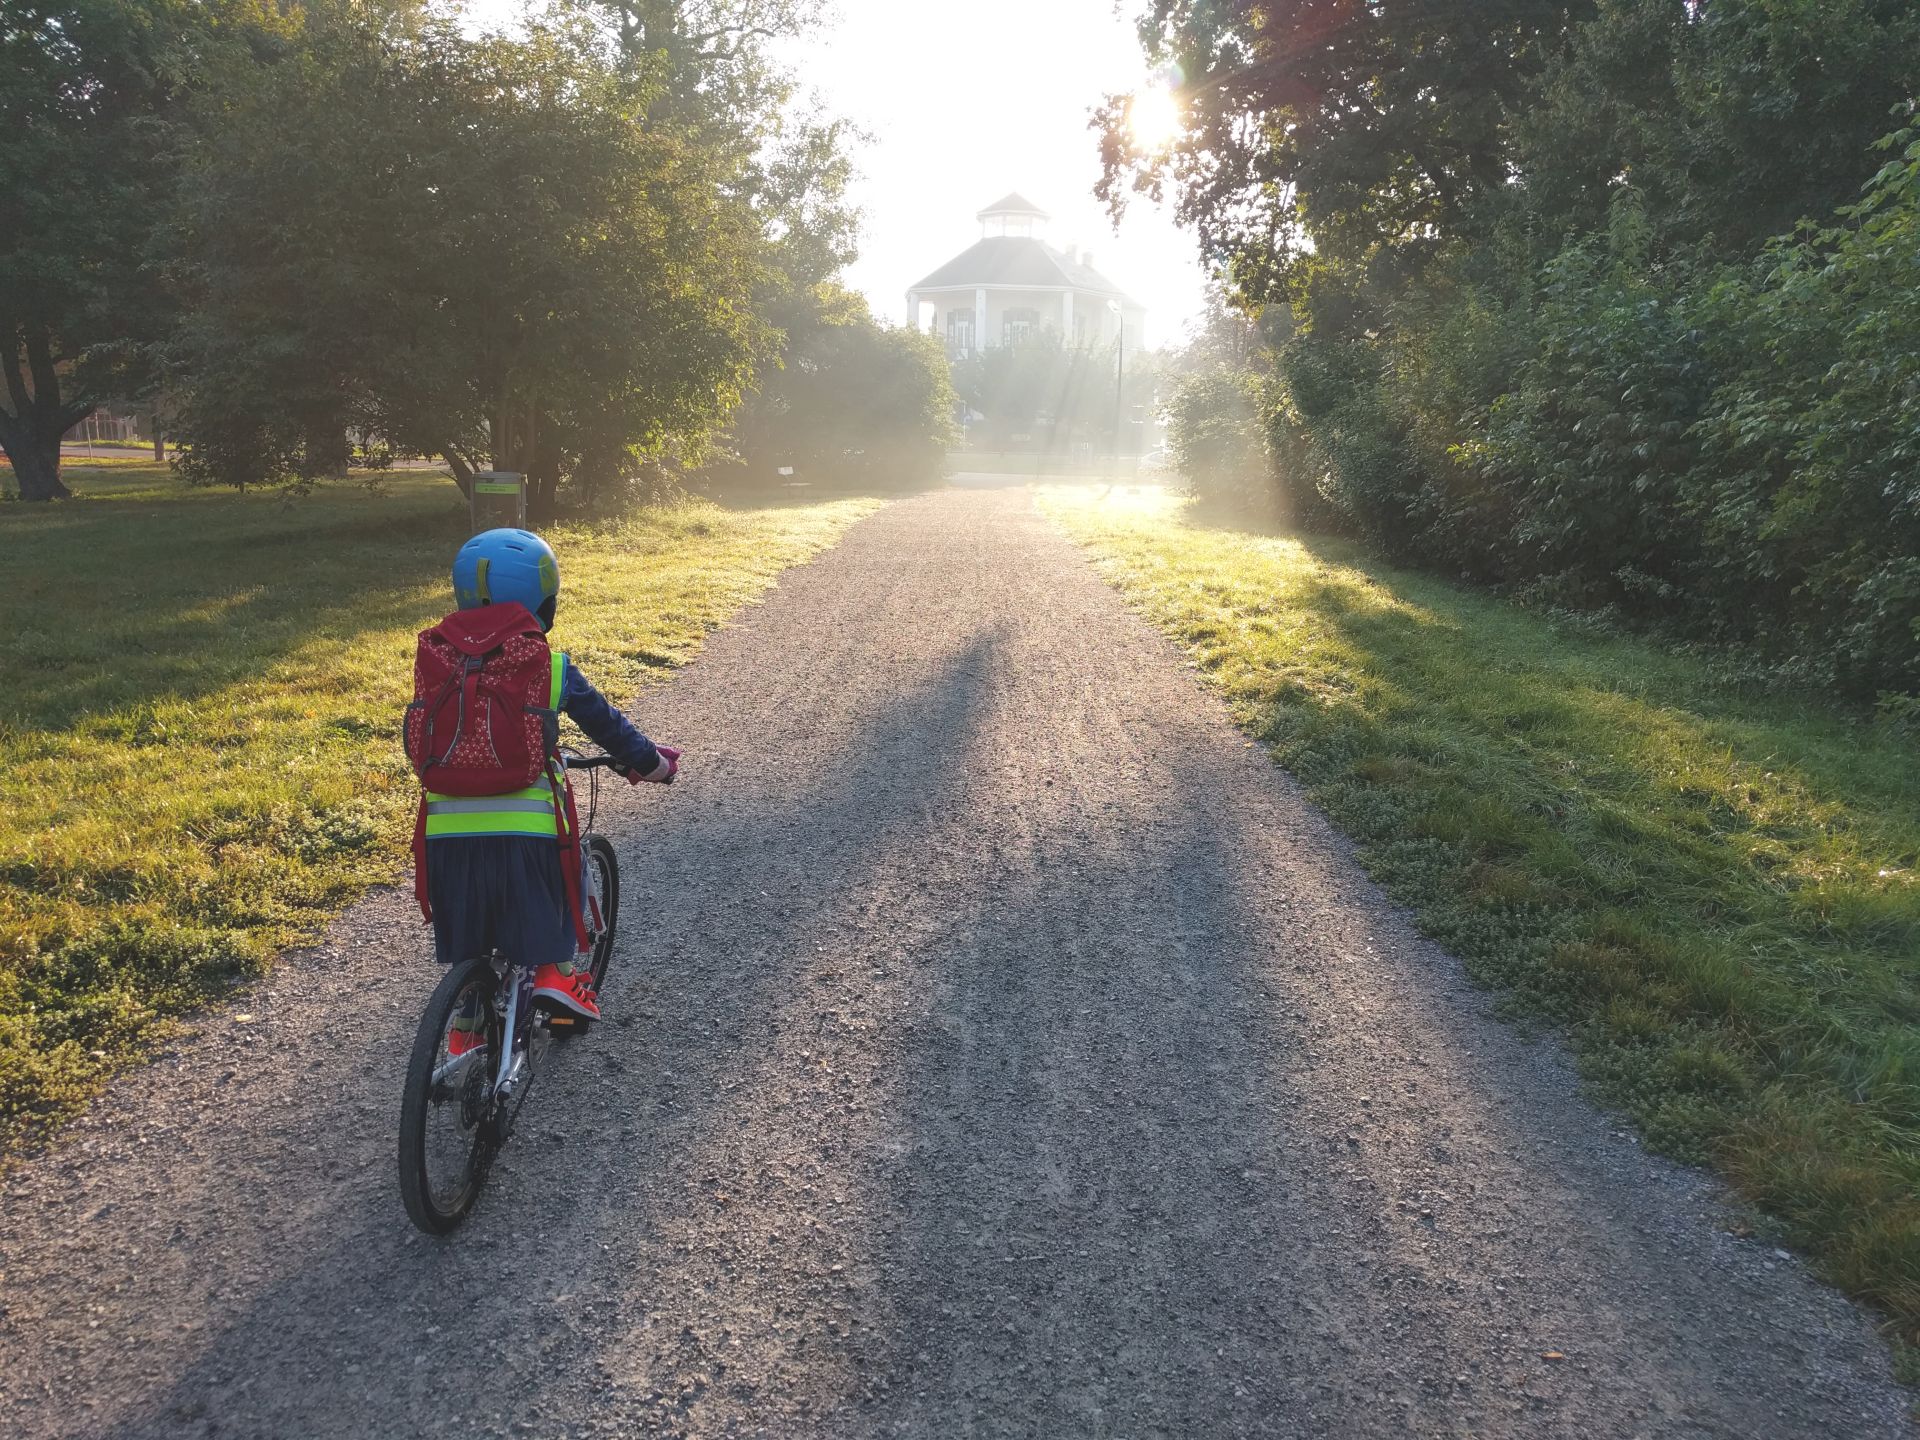 Ein Kind fährt mit einem Fahrrad einen Weg entlang. Es ist von hinten zu sehen.